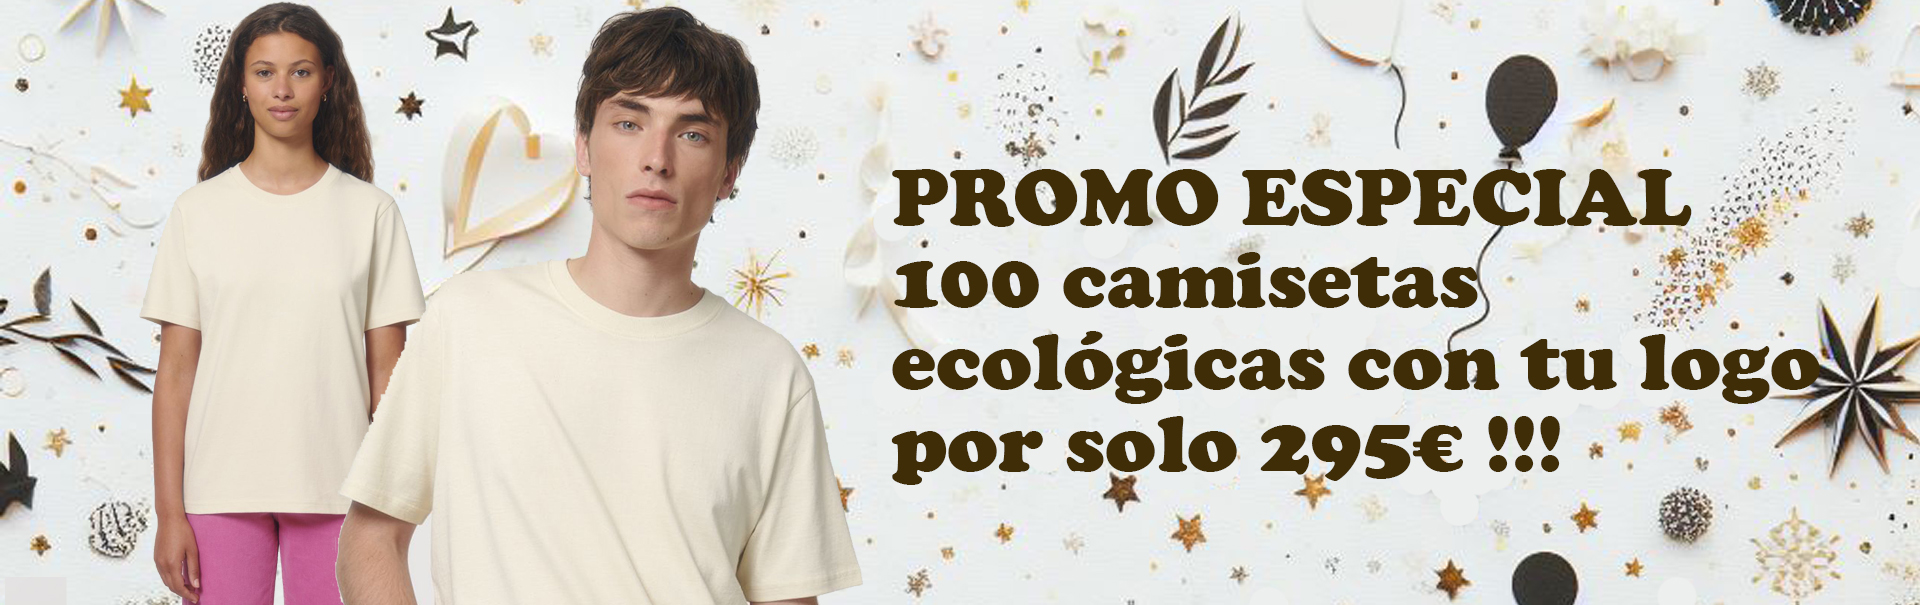 promocion camisetas ecologicas